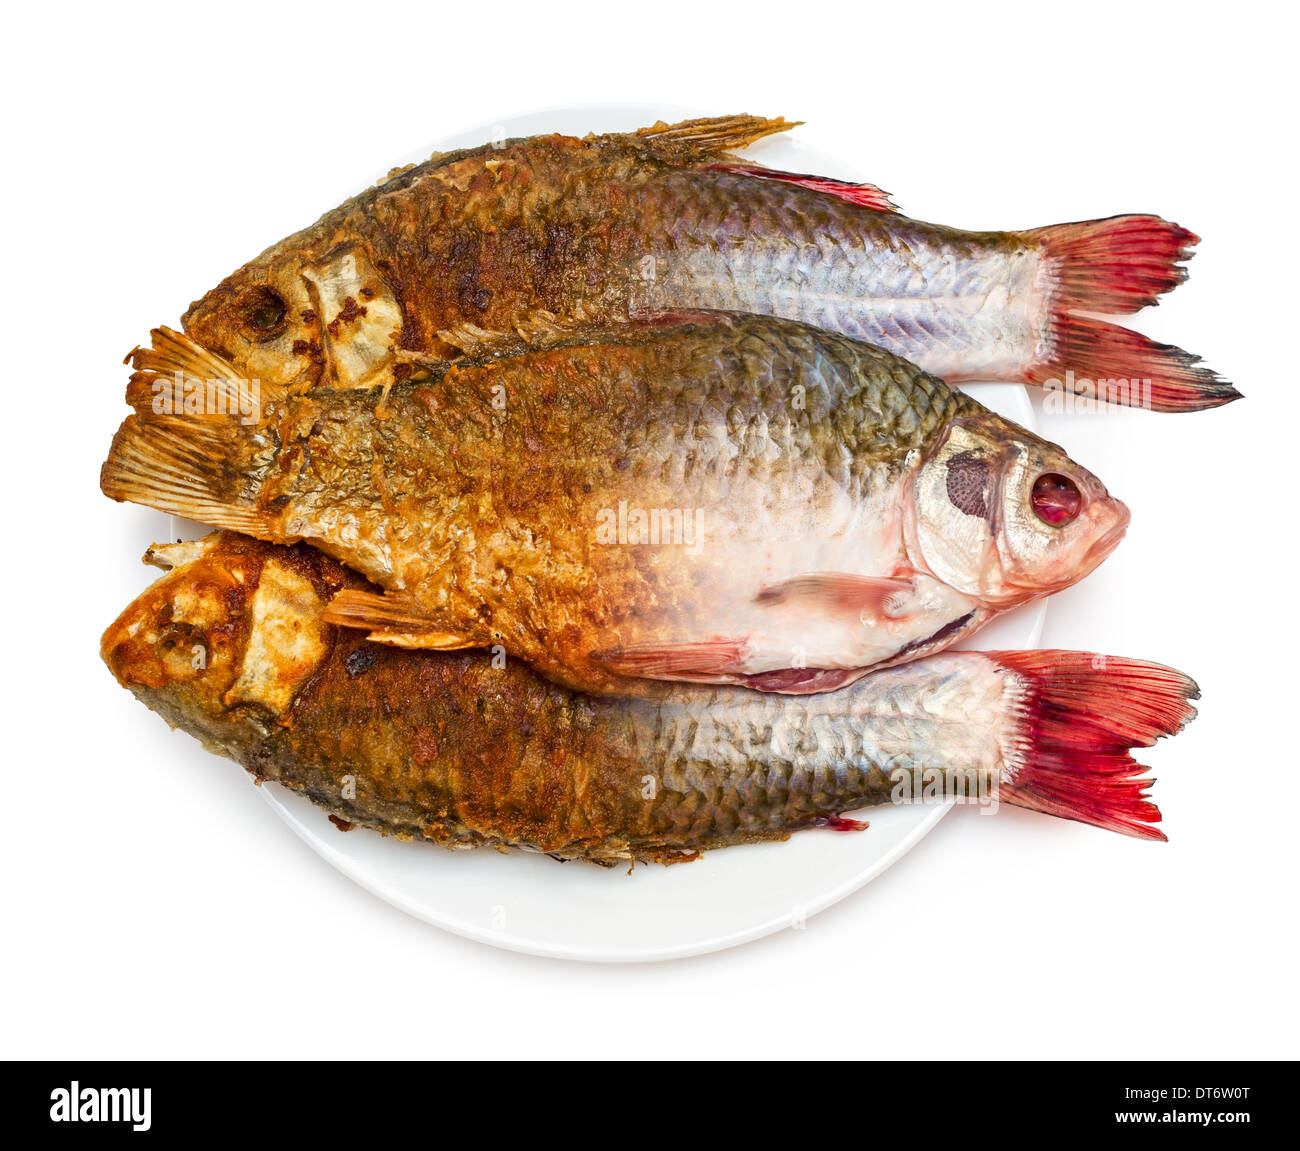 La friture de poissons. La moitié de la matière première et la friture de poissons sur une assiette, isolé sur fond blanc. Banque D'Images